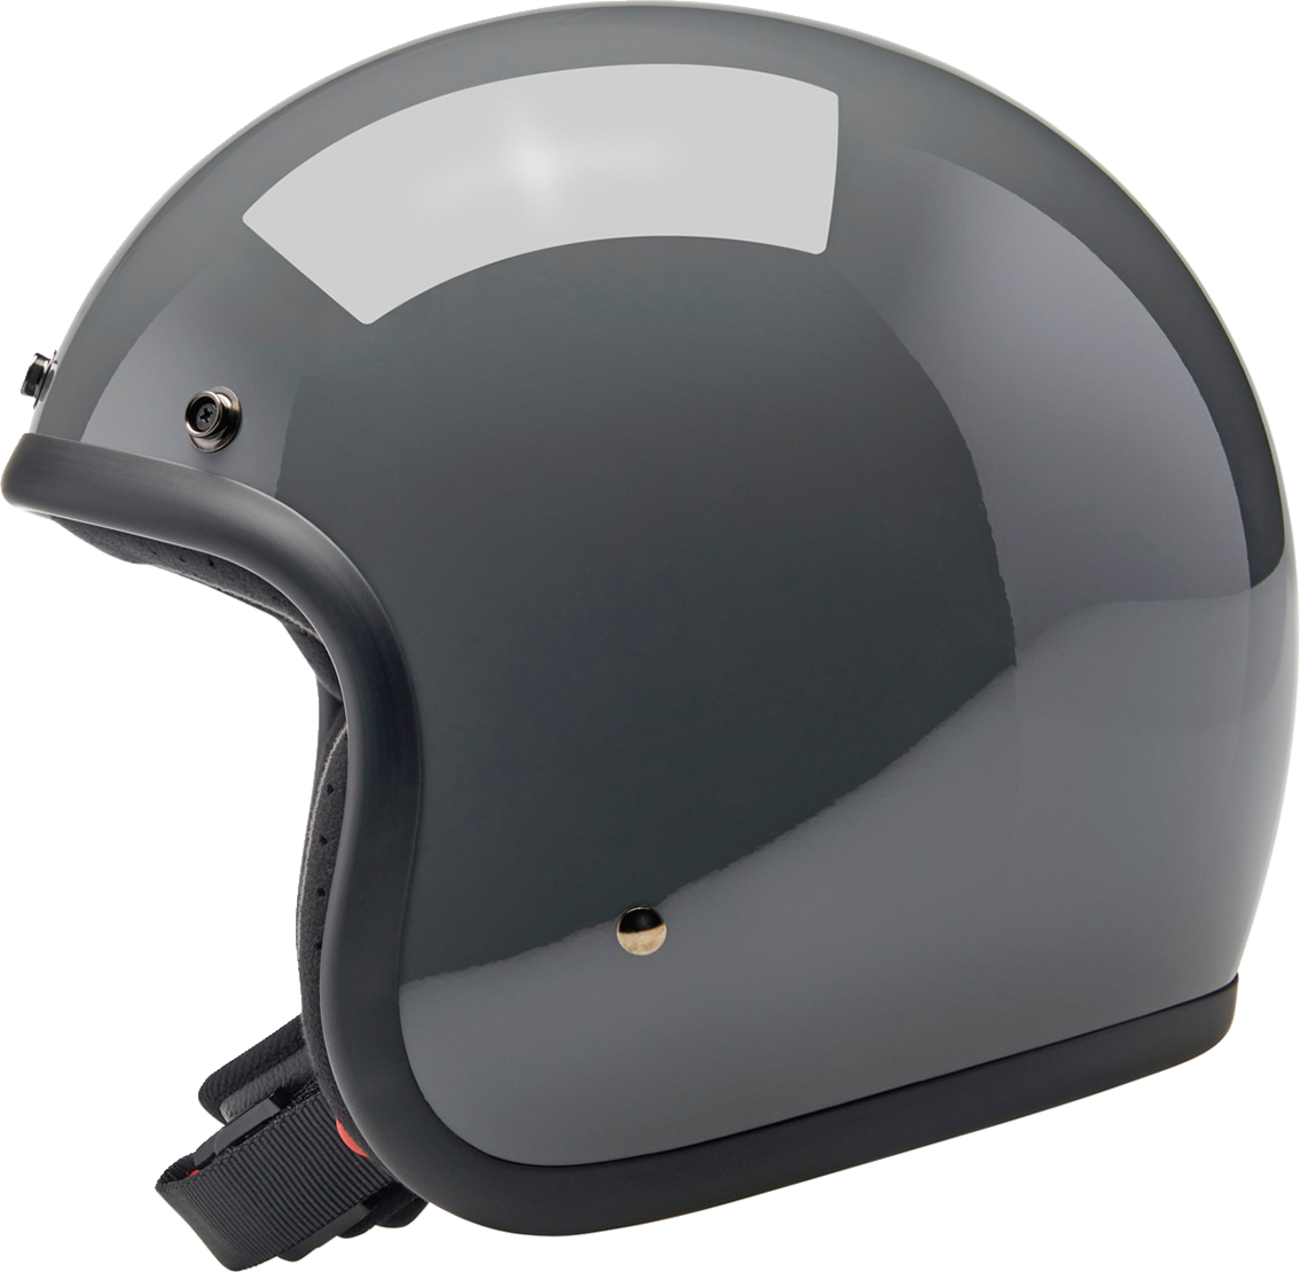 BILTWELL Bonanza Helmet - Gloss Storm Gray - Large 1001-165-204